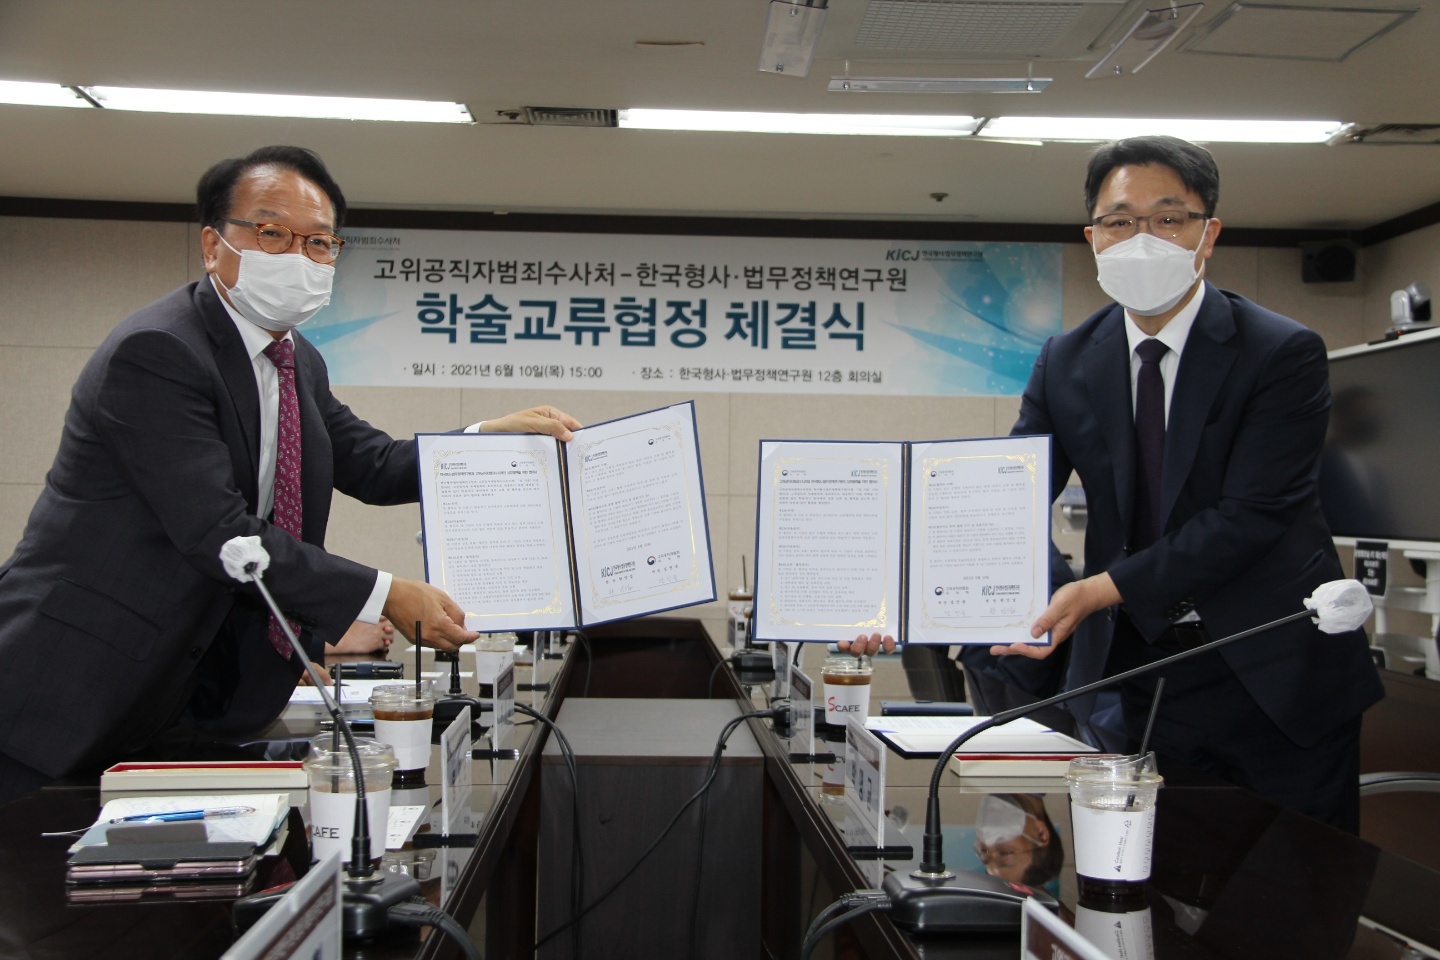 공수처-한국형사법무정책연구원 업무협약 중인 모습